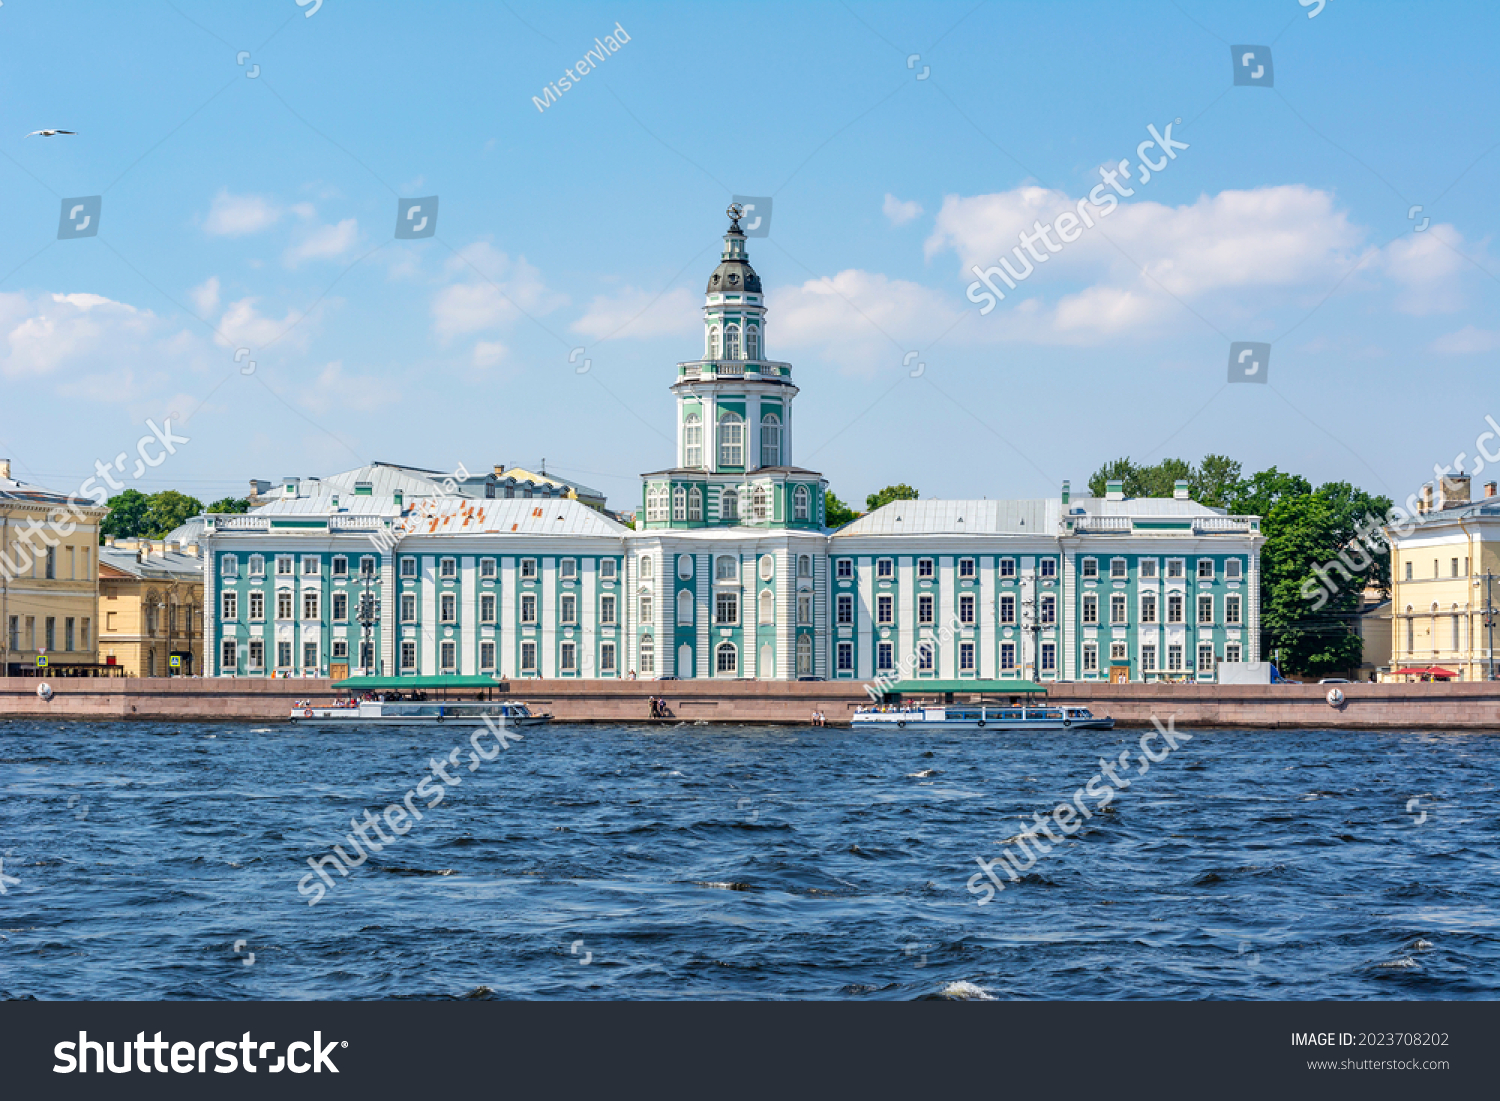 Музей Ломоносова в Санкт-Петербурге